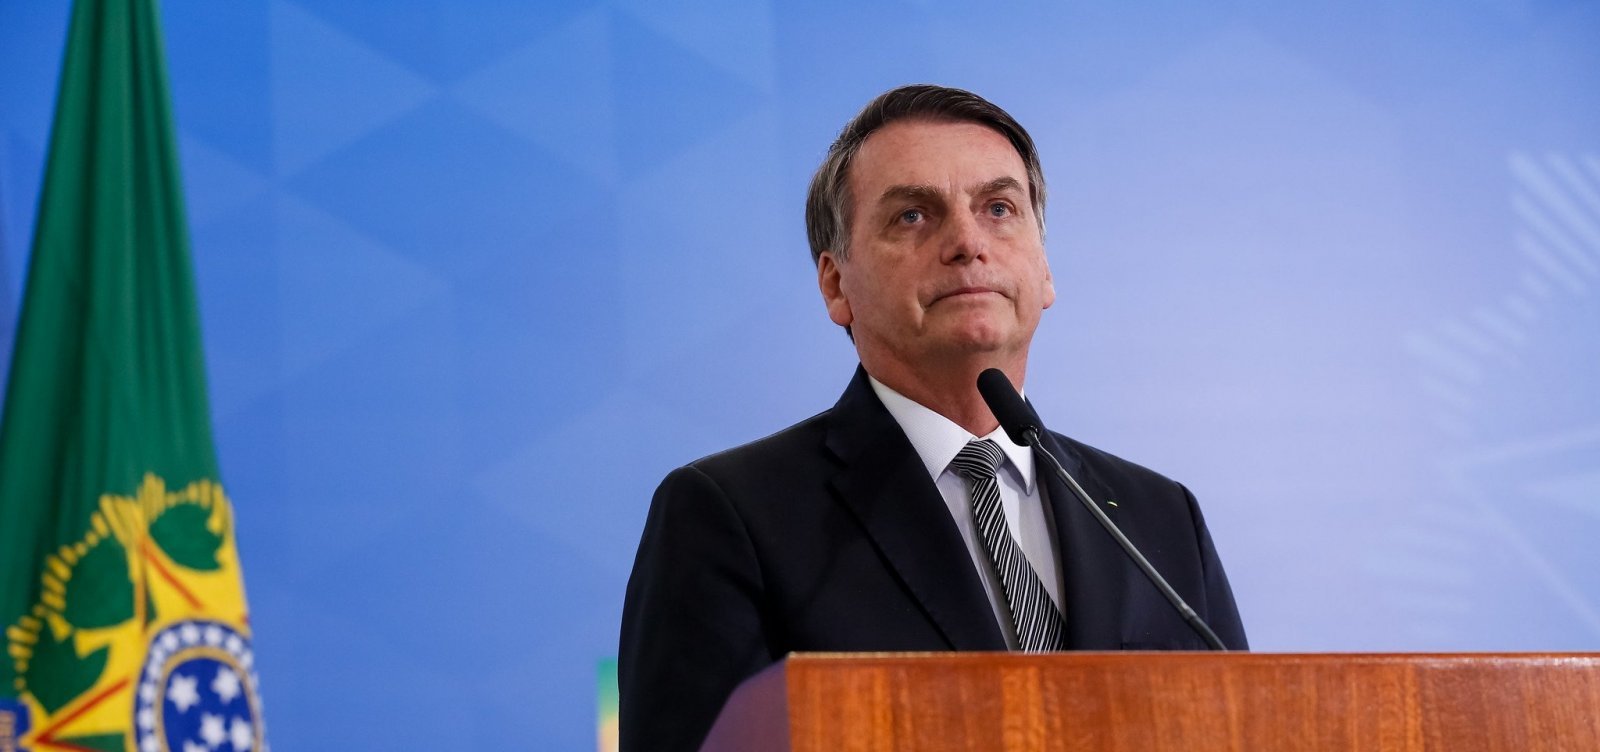 17% dos eleitores de Bolsonaro dizem que se arrependeram do voto, aponta Datafolha